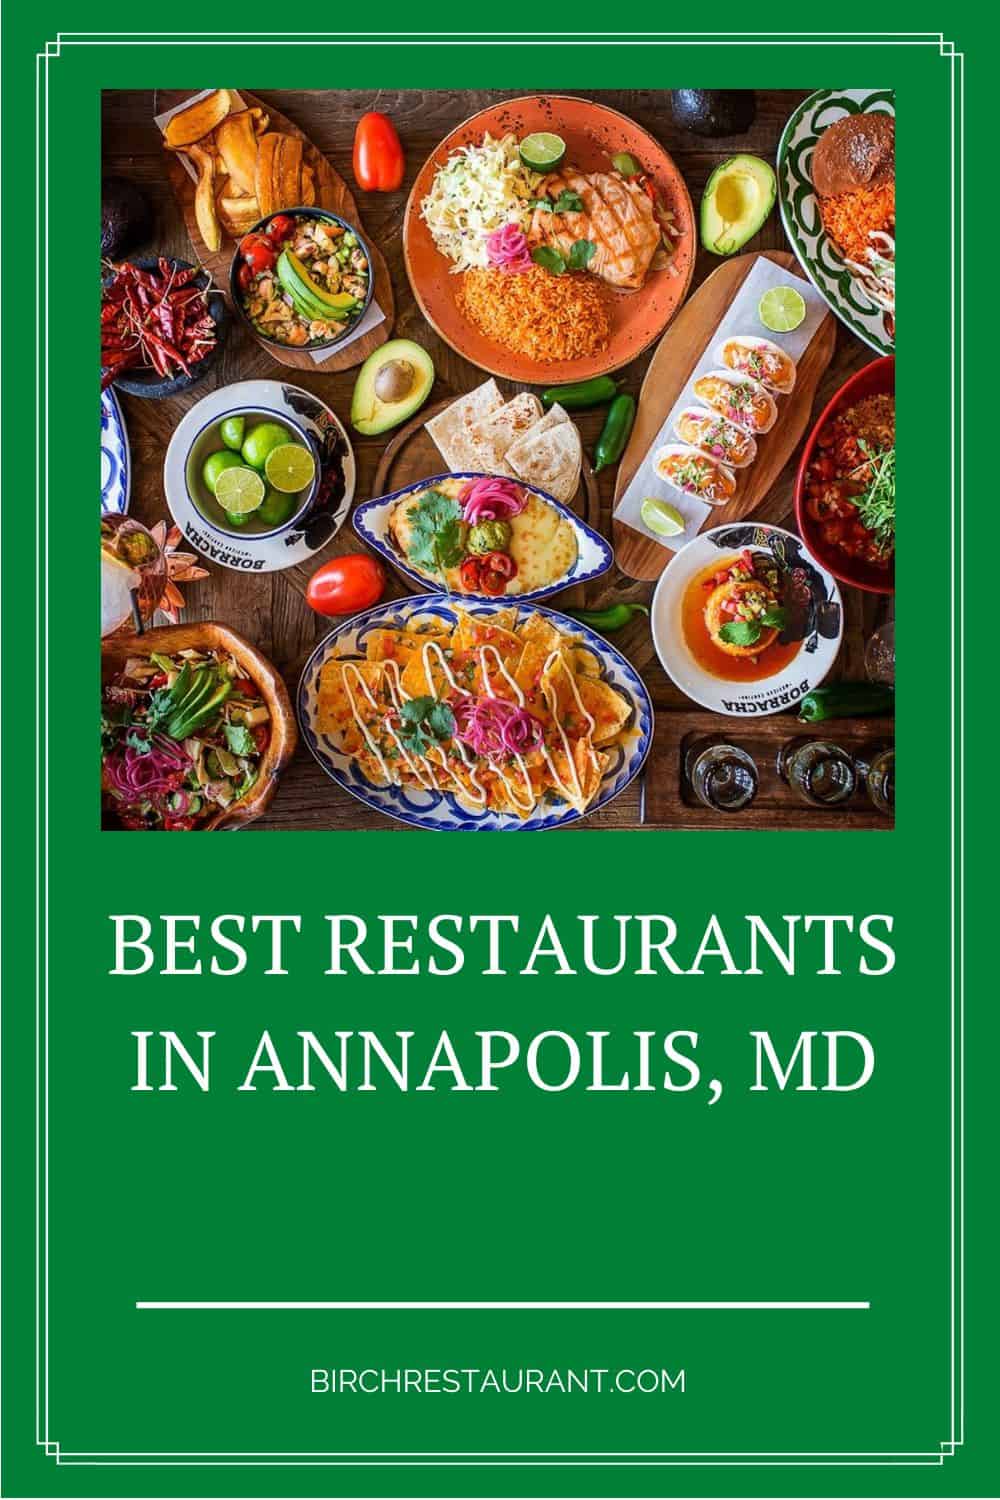 Best Restaurants in Annapolis